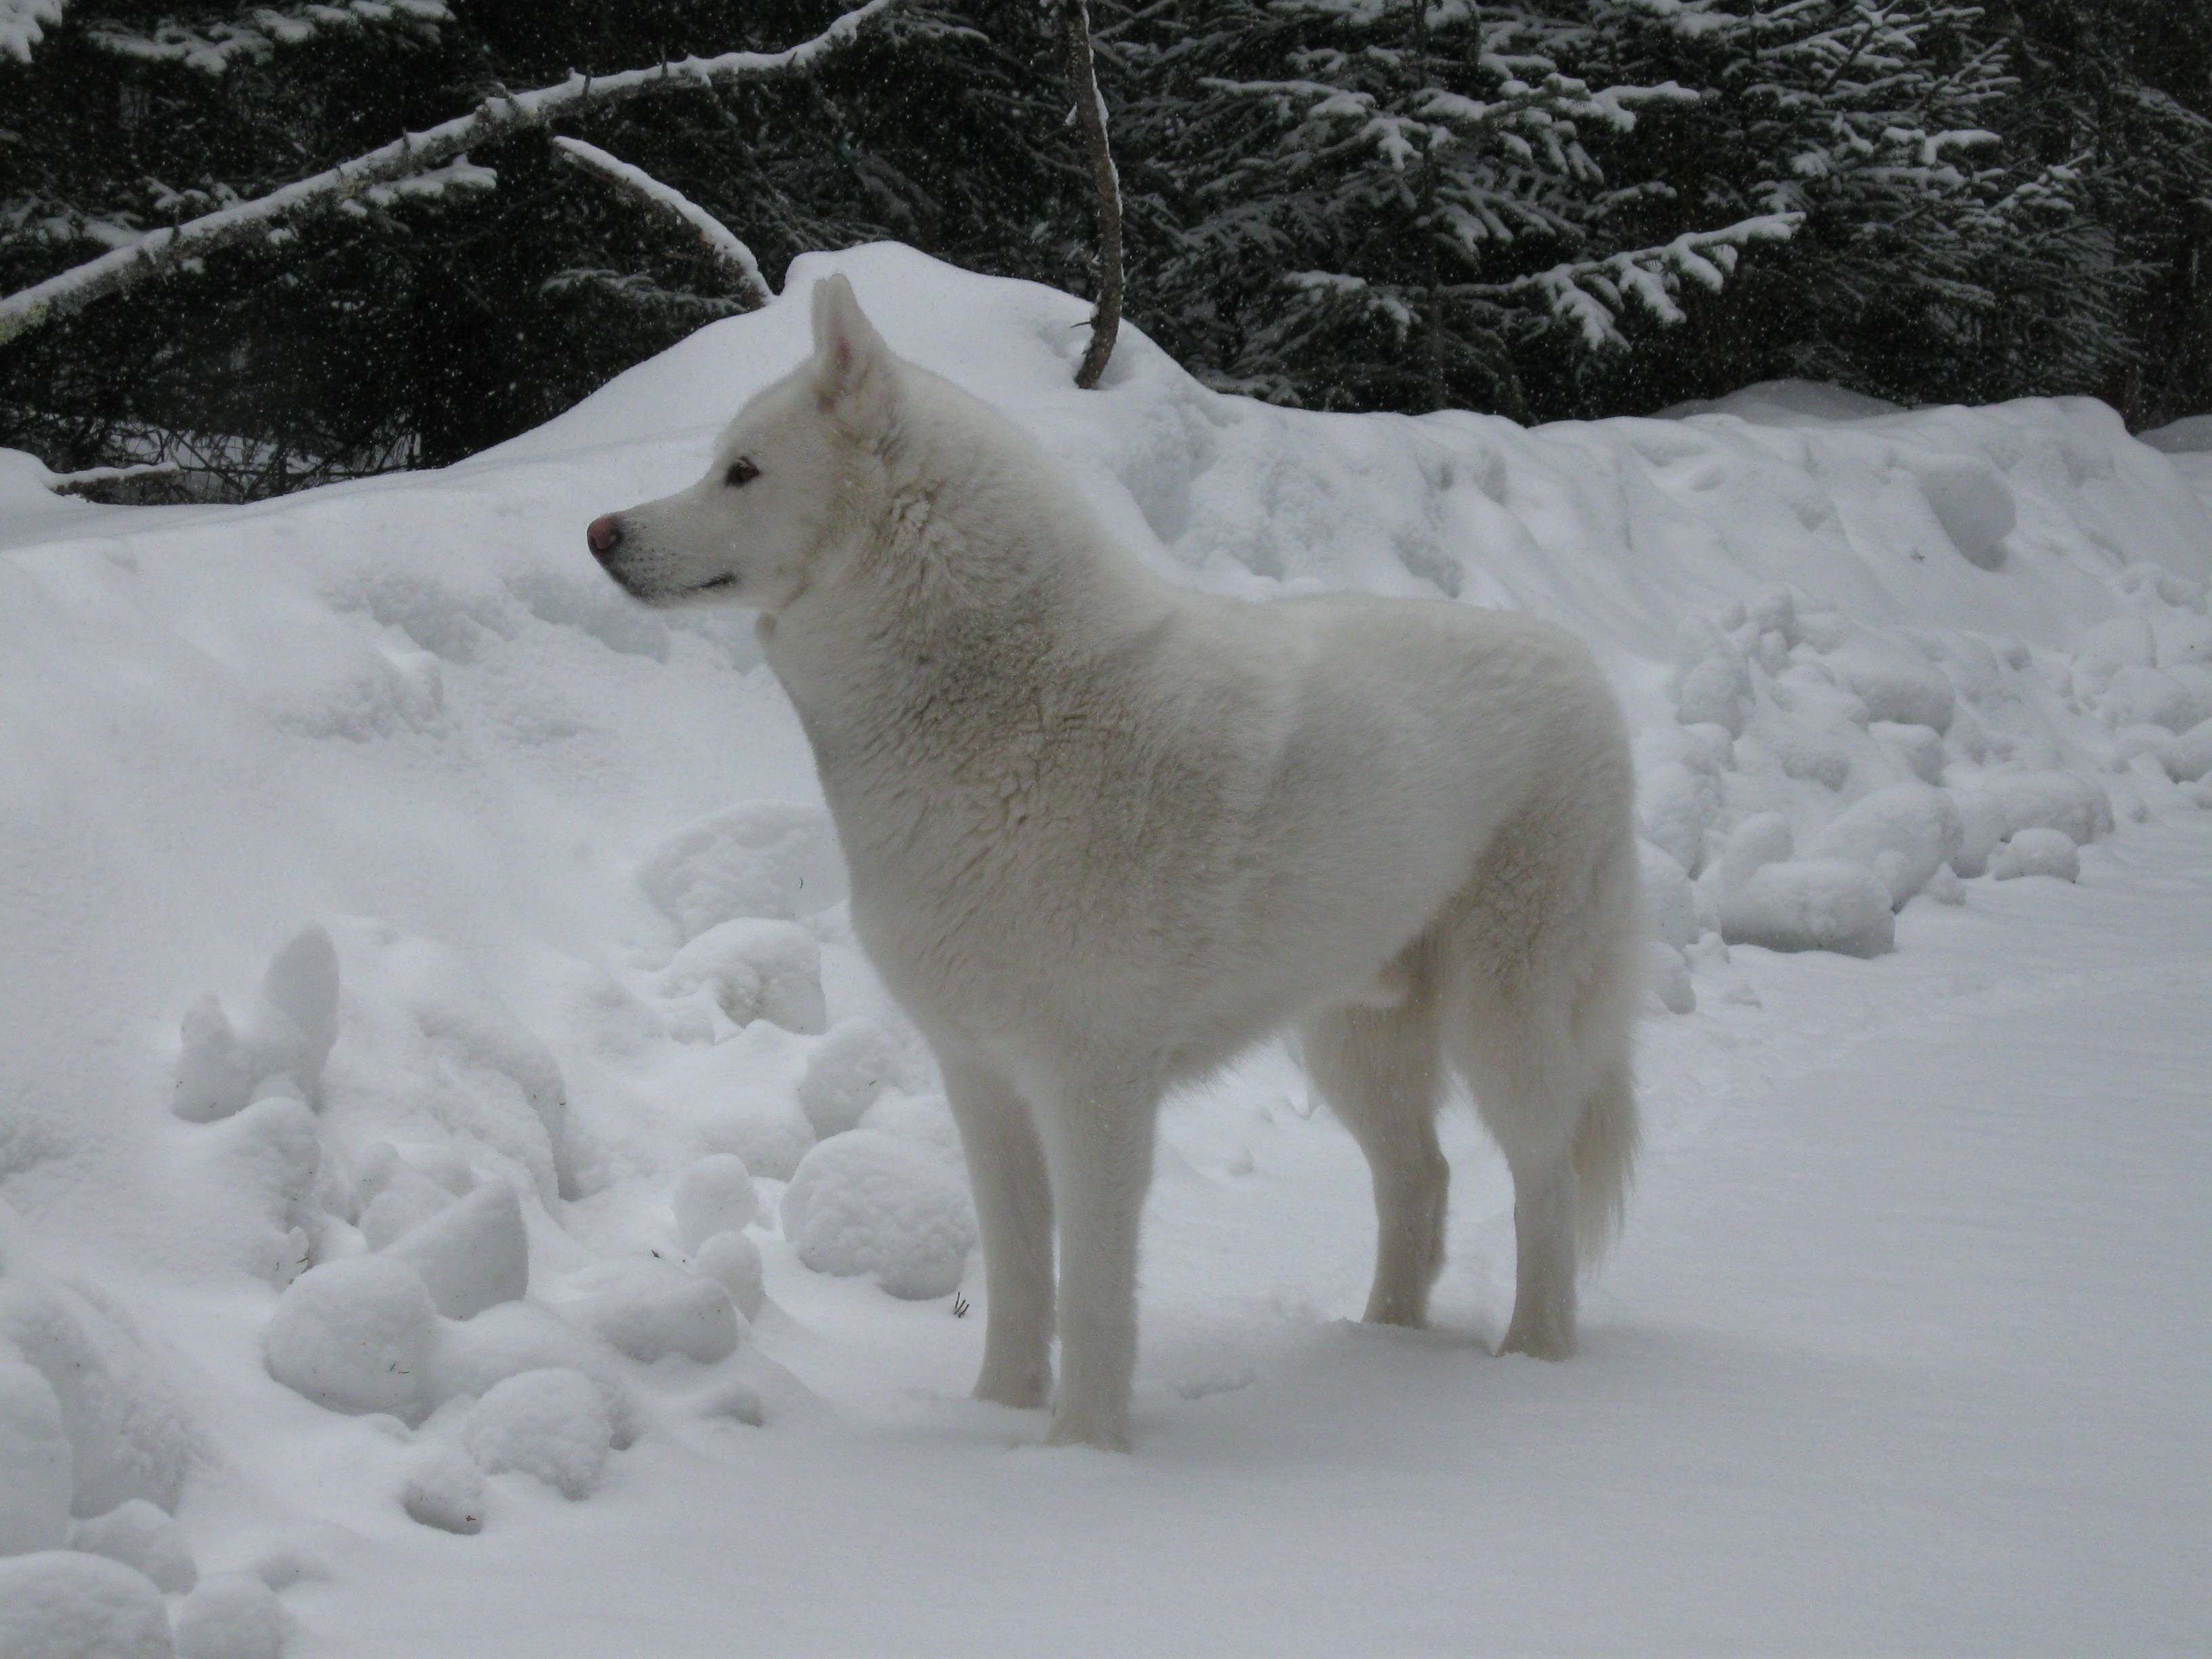  والپیپر منحصر به فرد و دیدنی از هاسکی سفید روی برف در جنگل انبوه 